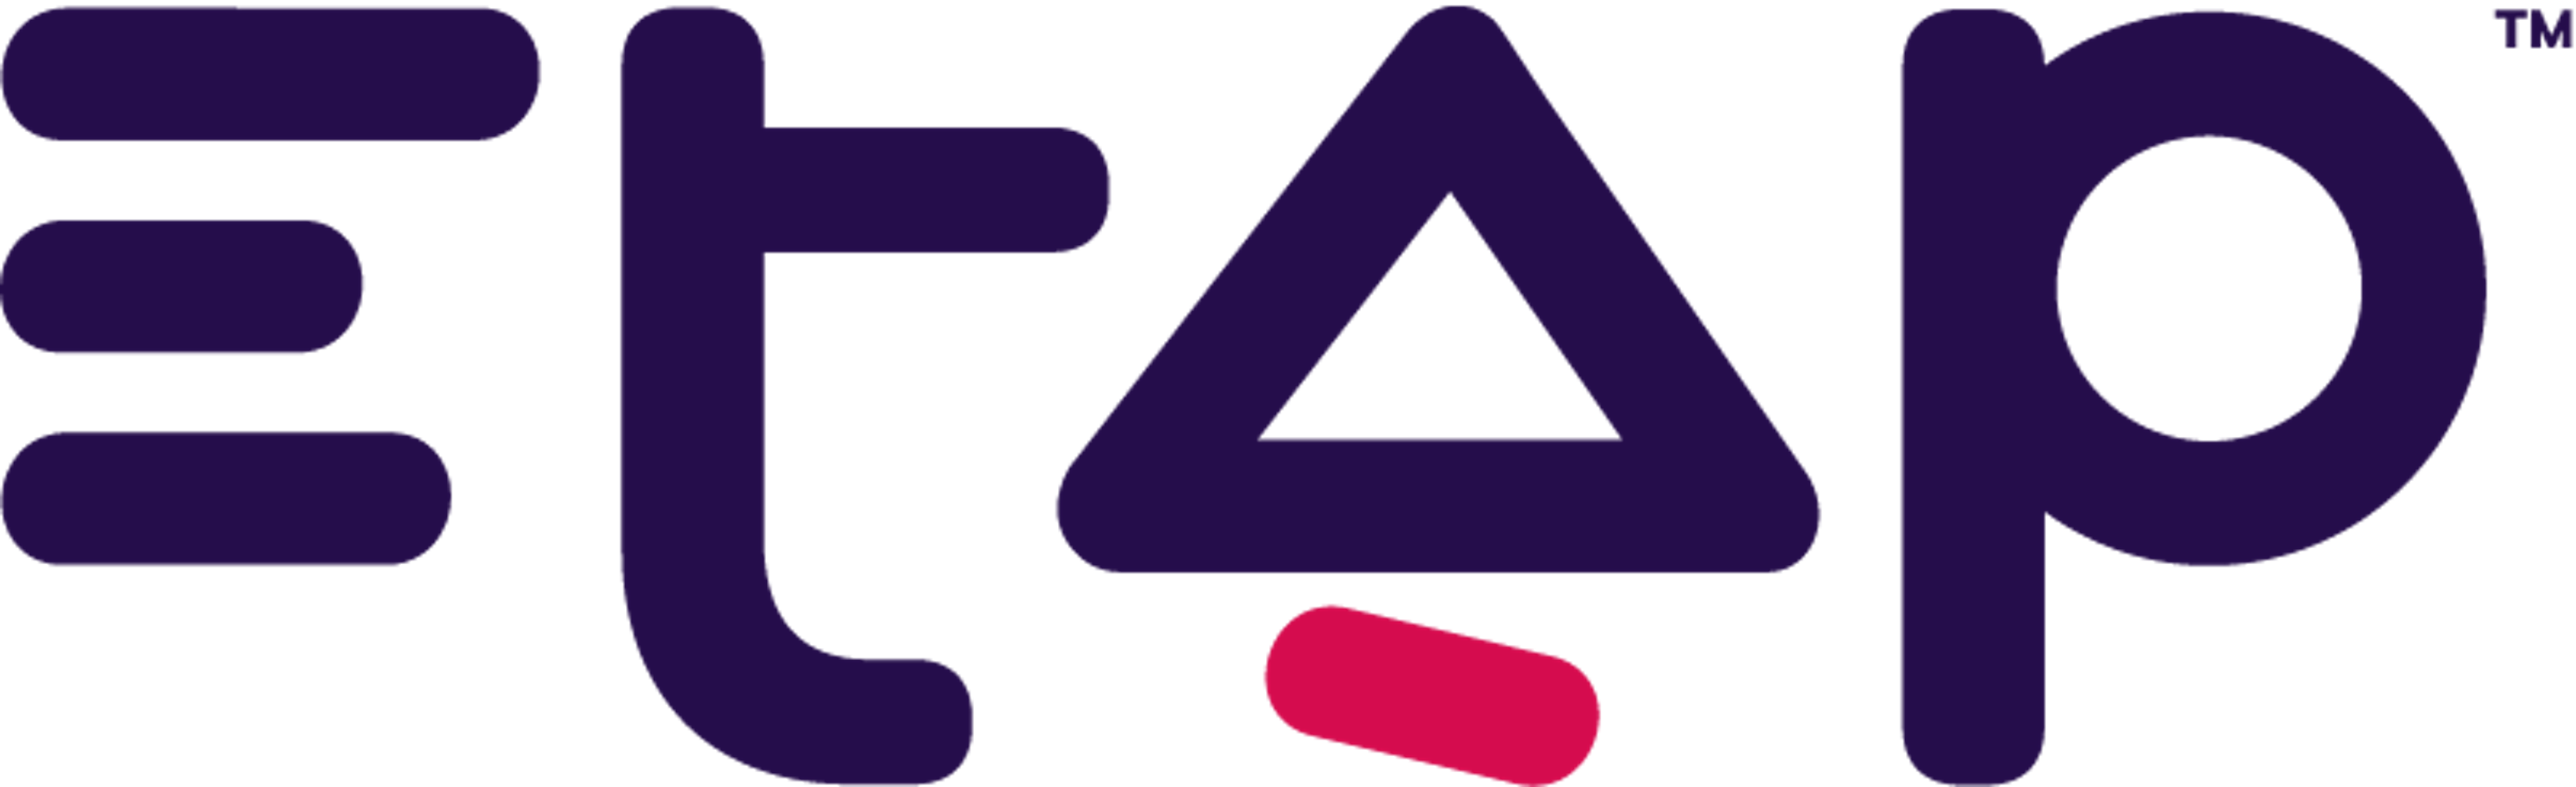 ETAP Logo